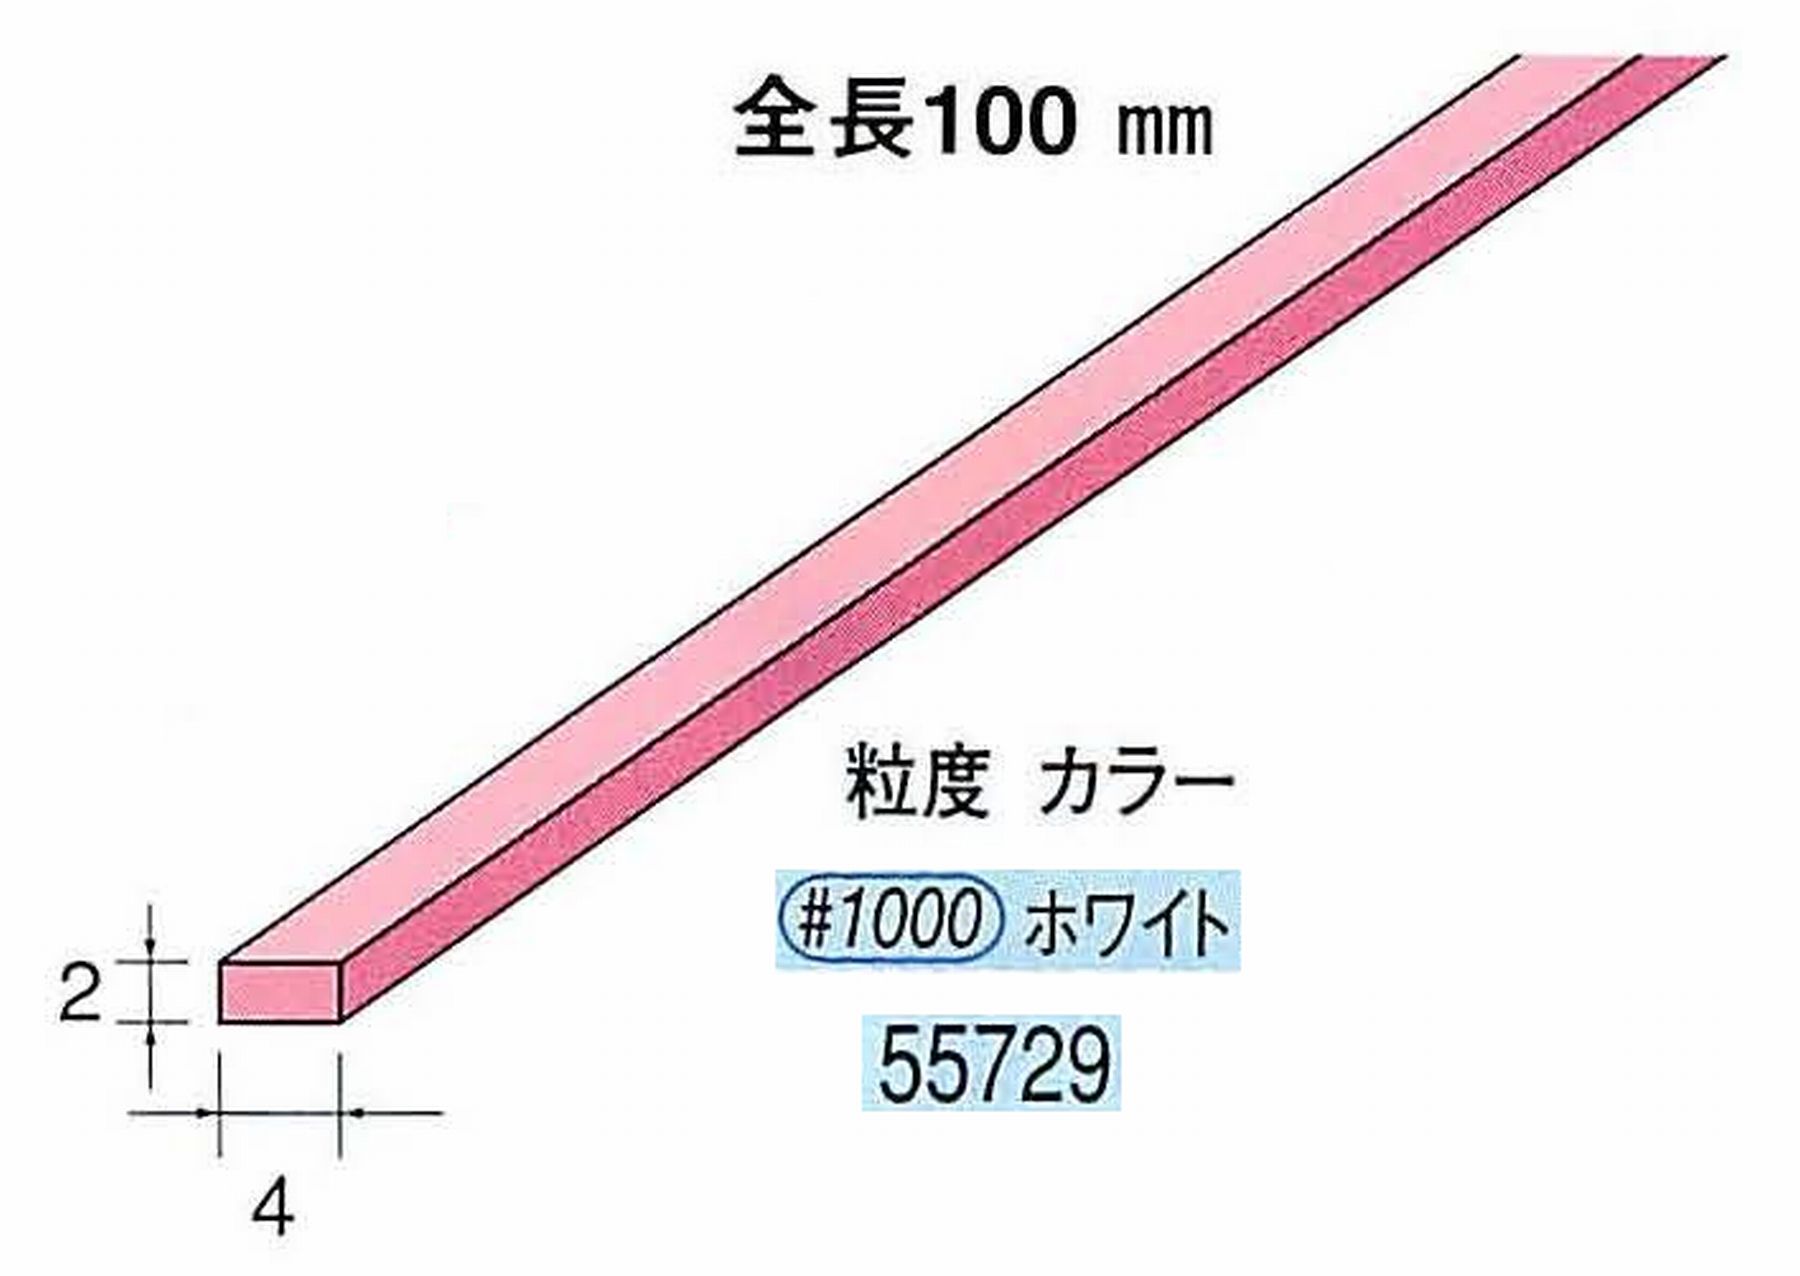 ナカニシ/NAKANISHI セラファイバー砥石 全長100mm ホワイト 55729